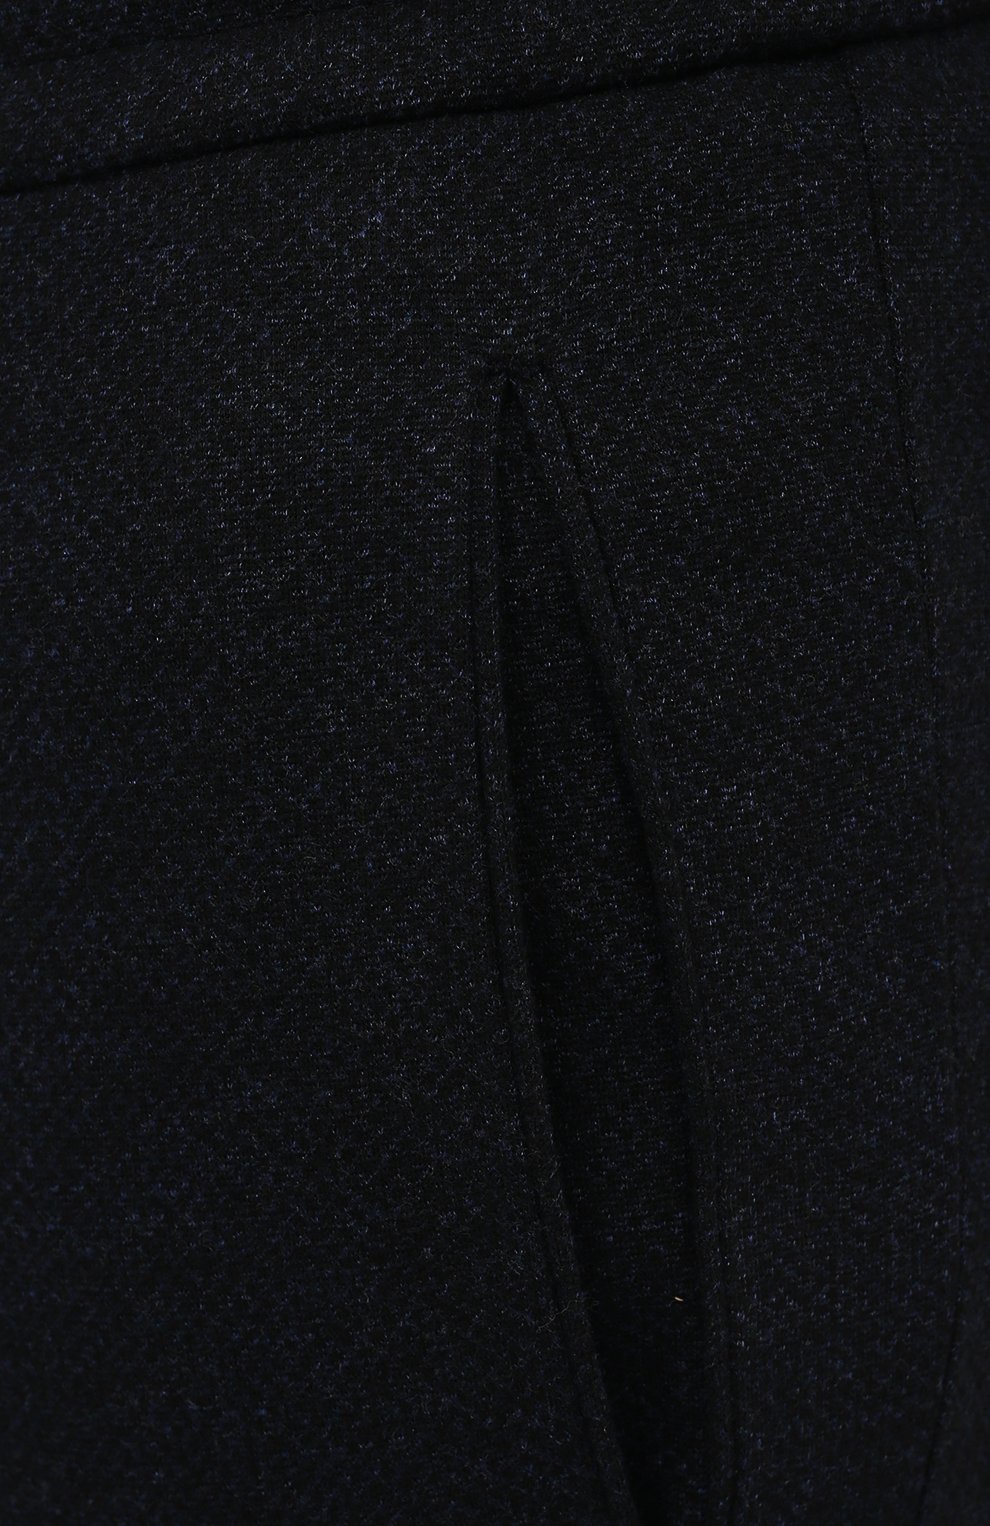 Мужские брюки из вискозы BERWICH темно-синего цвета, арт. SPIAGGIA RETR0/IW1077X | Фото 5 (Длина (брюки, джинсы): Стандартные; Случай: Повседневный; Материал внешний: Вискоза; Стили: Кэжуэл)